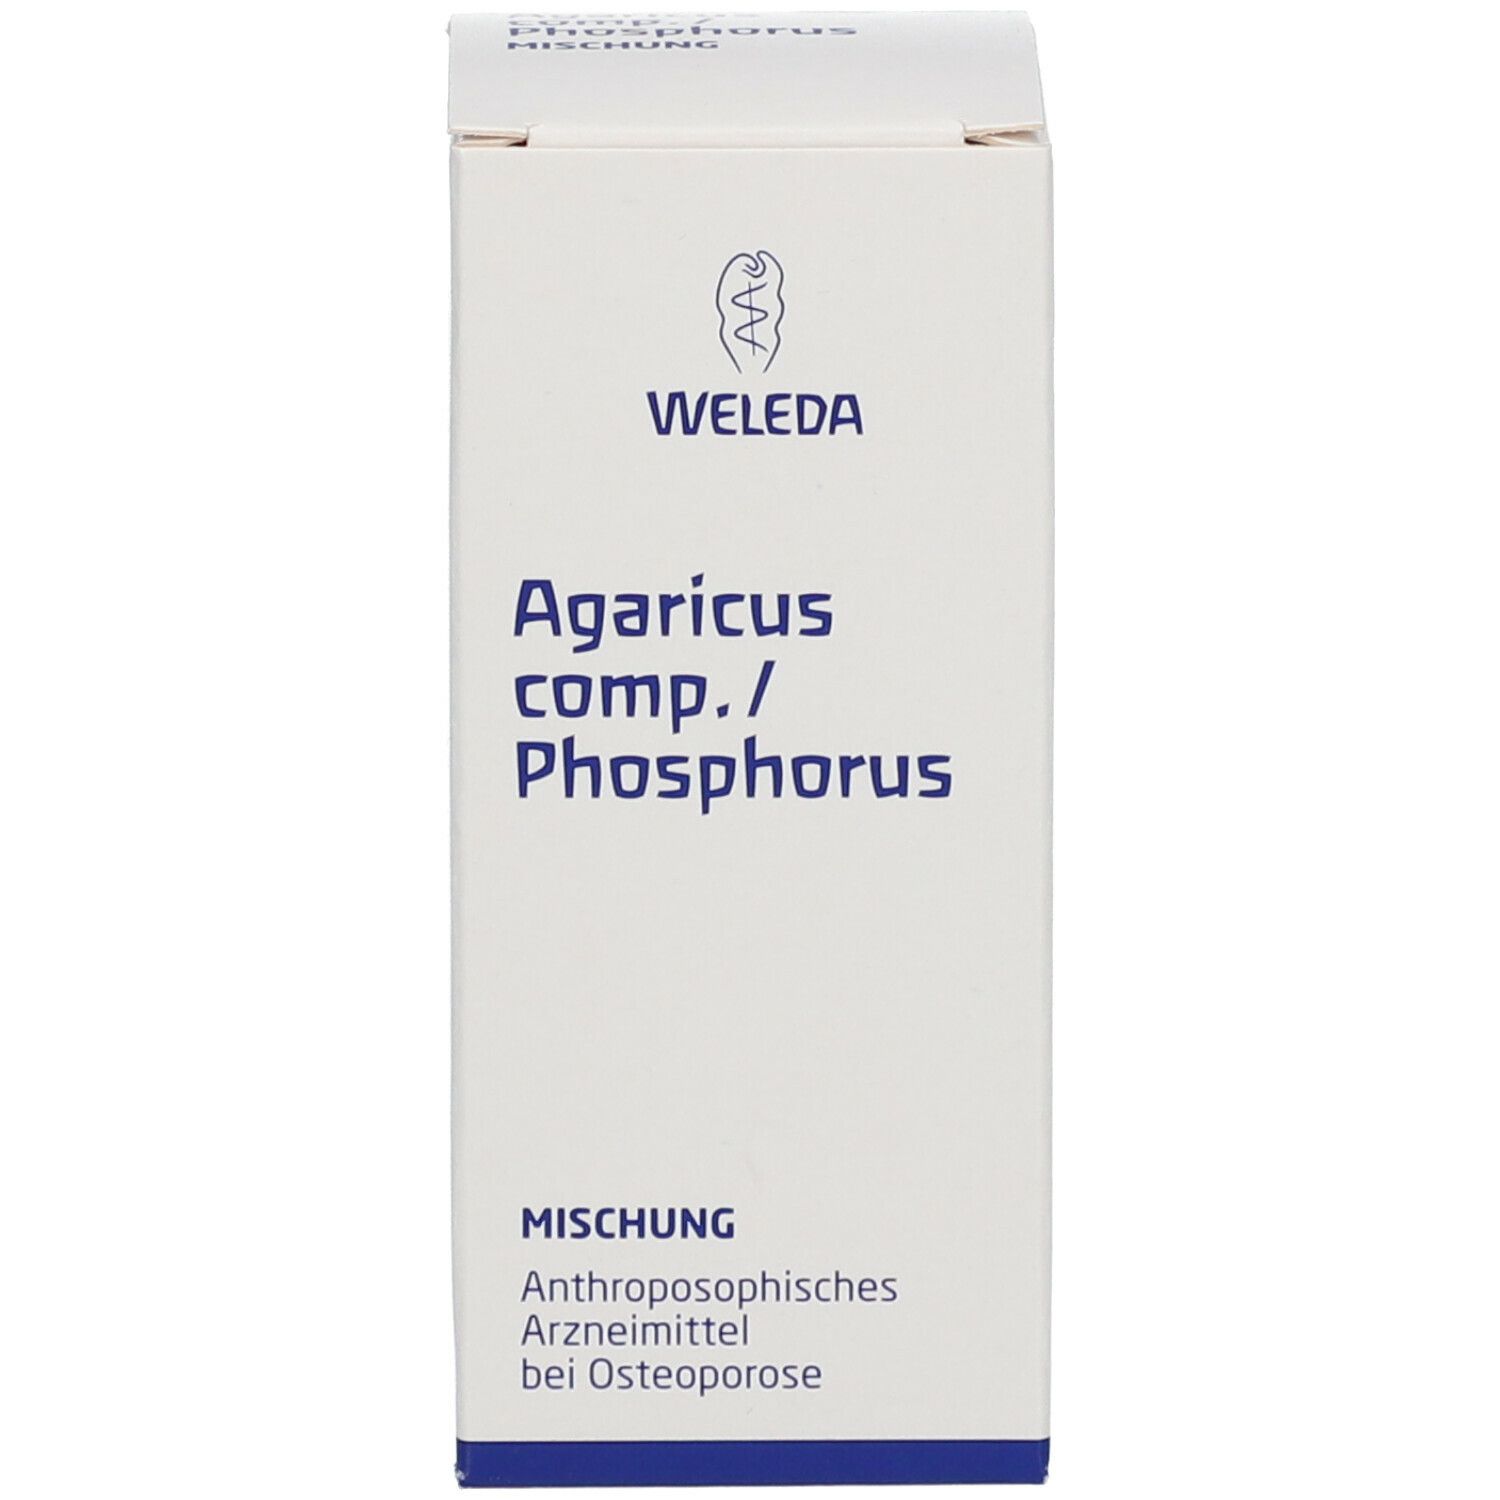 Agaricus comp. / Phosphorus